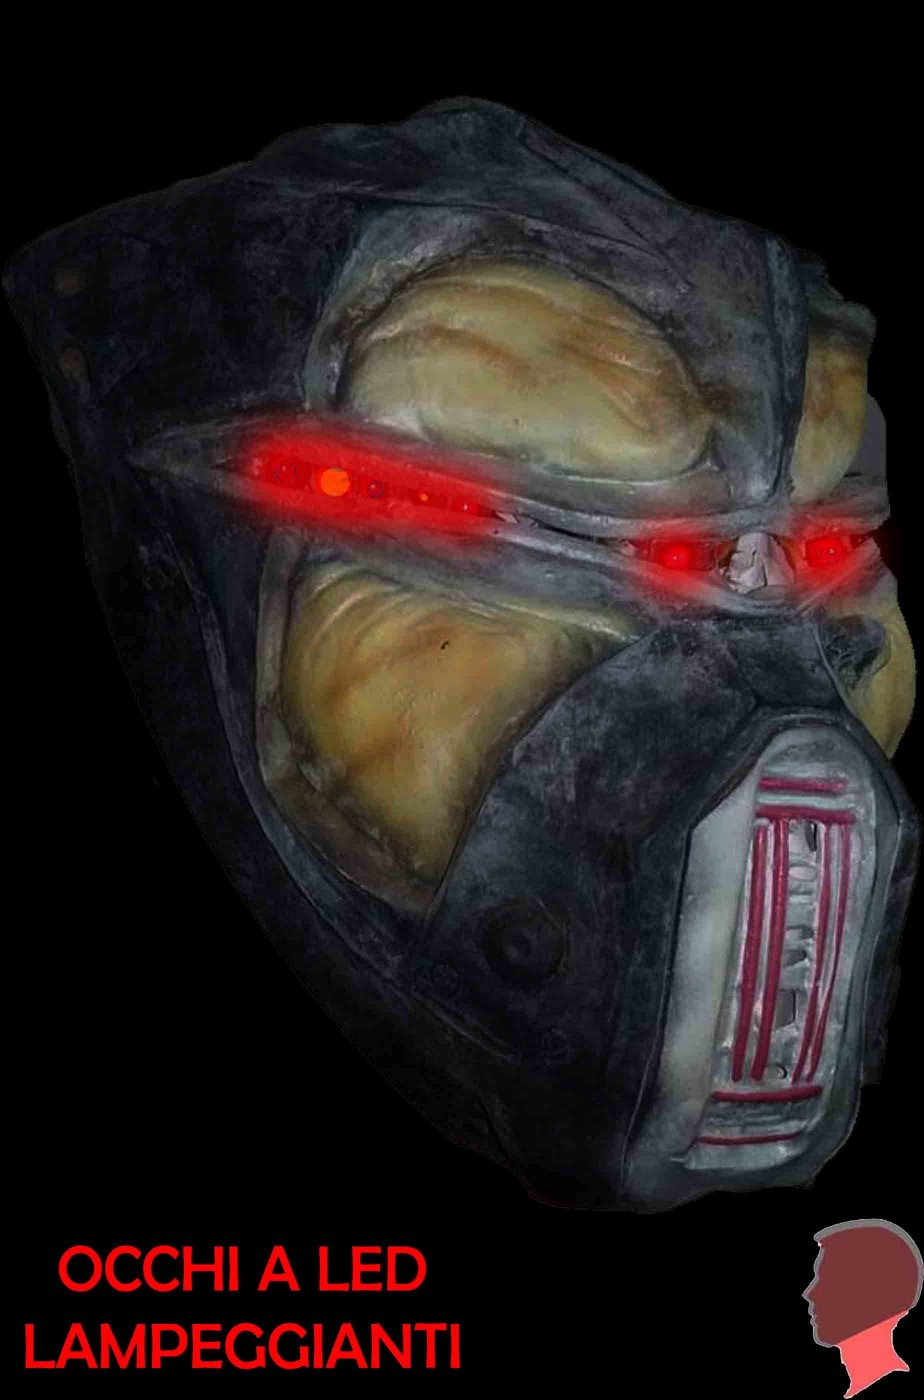 Maschera alieno androide a LED con occhi lampeggianti